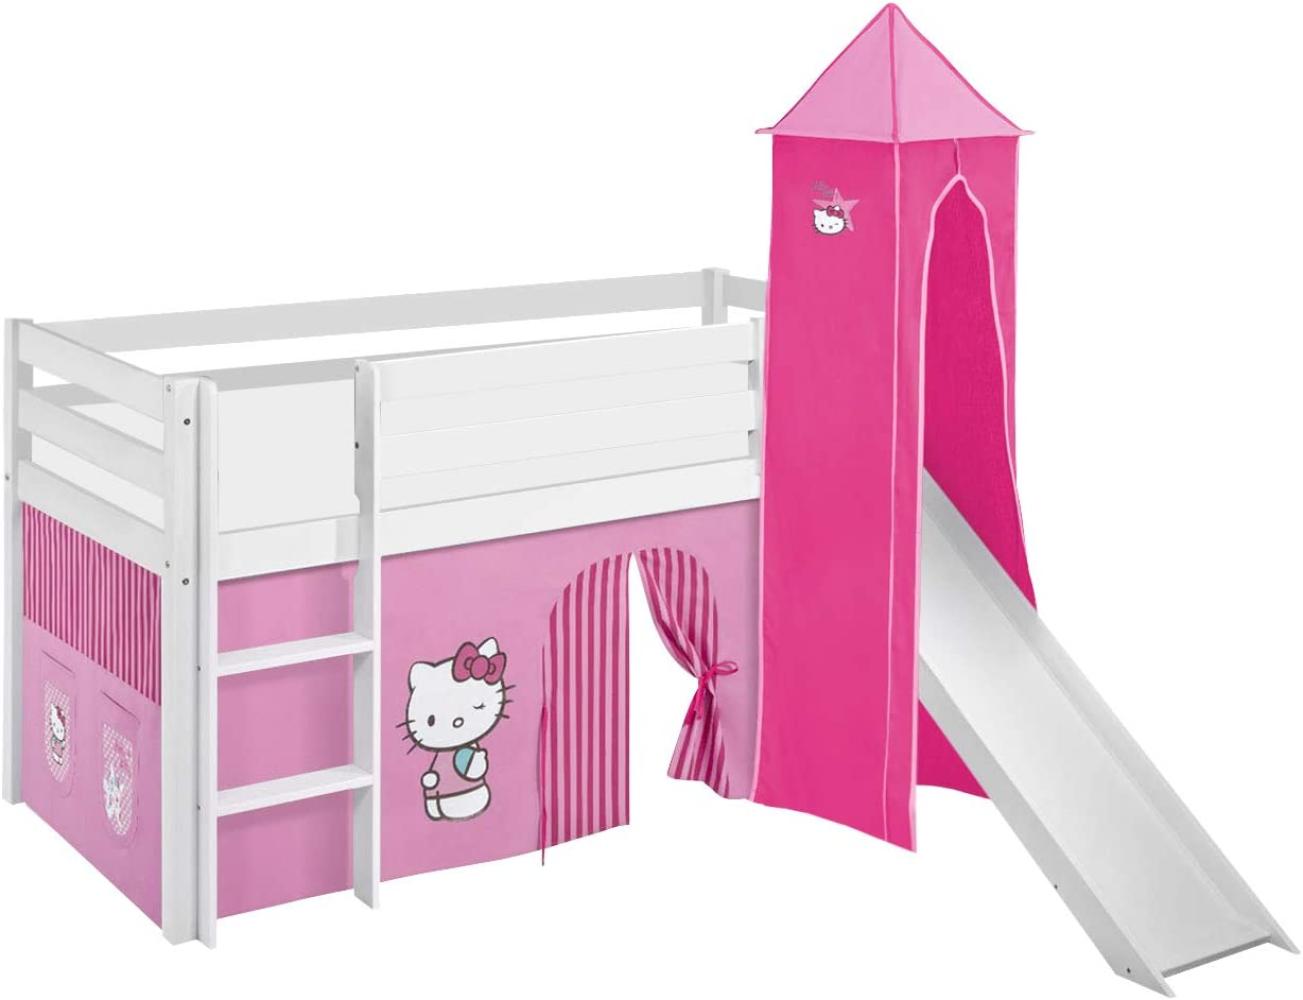 Lilokids 'Jelle' Spielbett 90 x 190 cm, Hello Kitty Rosa, Kiefer massiv, mit Turm, Rutsche und Vorhang Bild 1